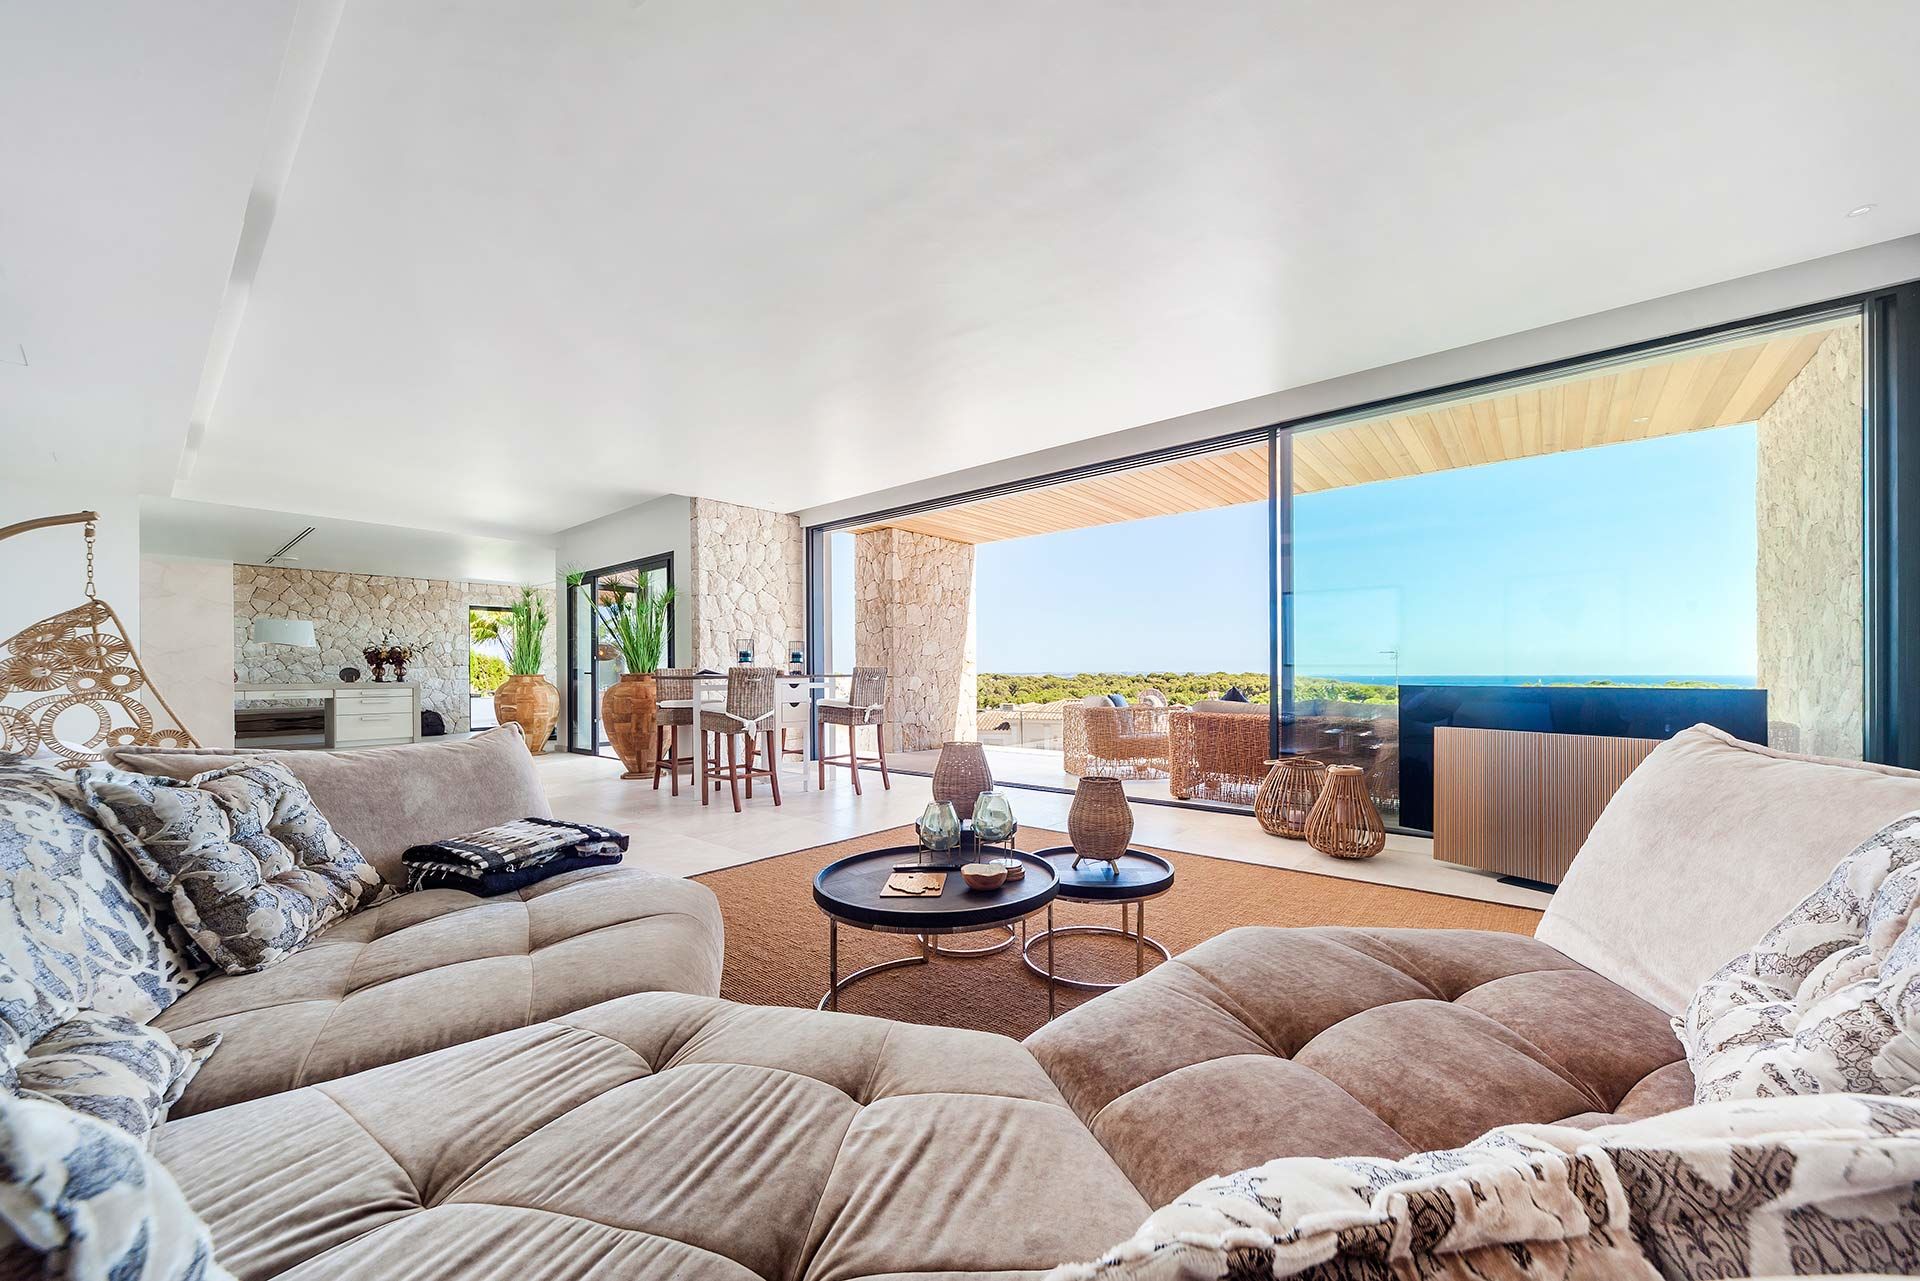 Kernsanierte Luxusvilla mit Meerblick in exklusiver Wohnlage in Bendinat - Wohnbereich mit Zugang zur Terrasse